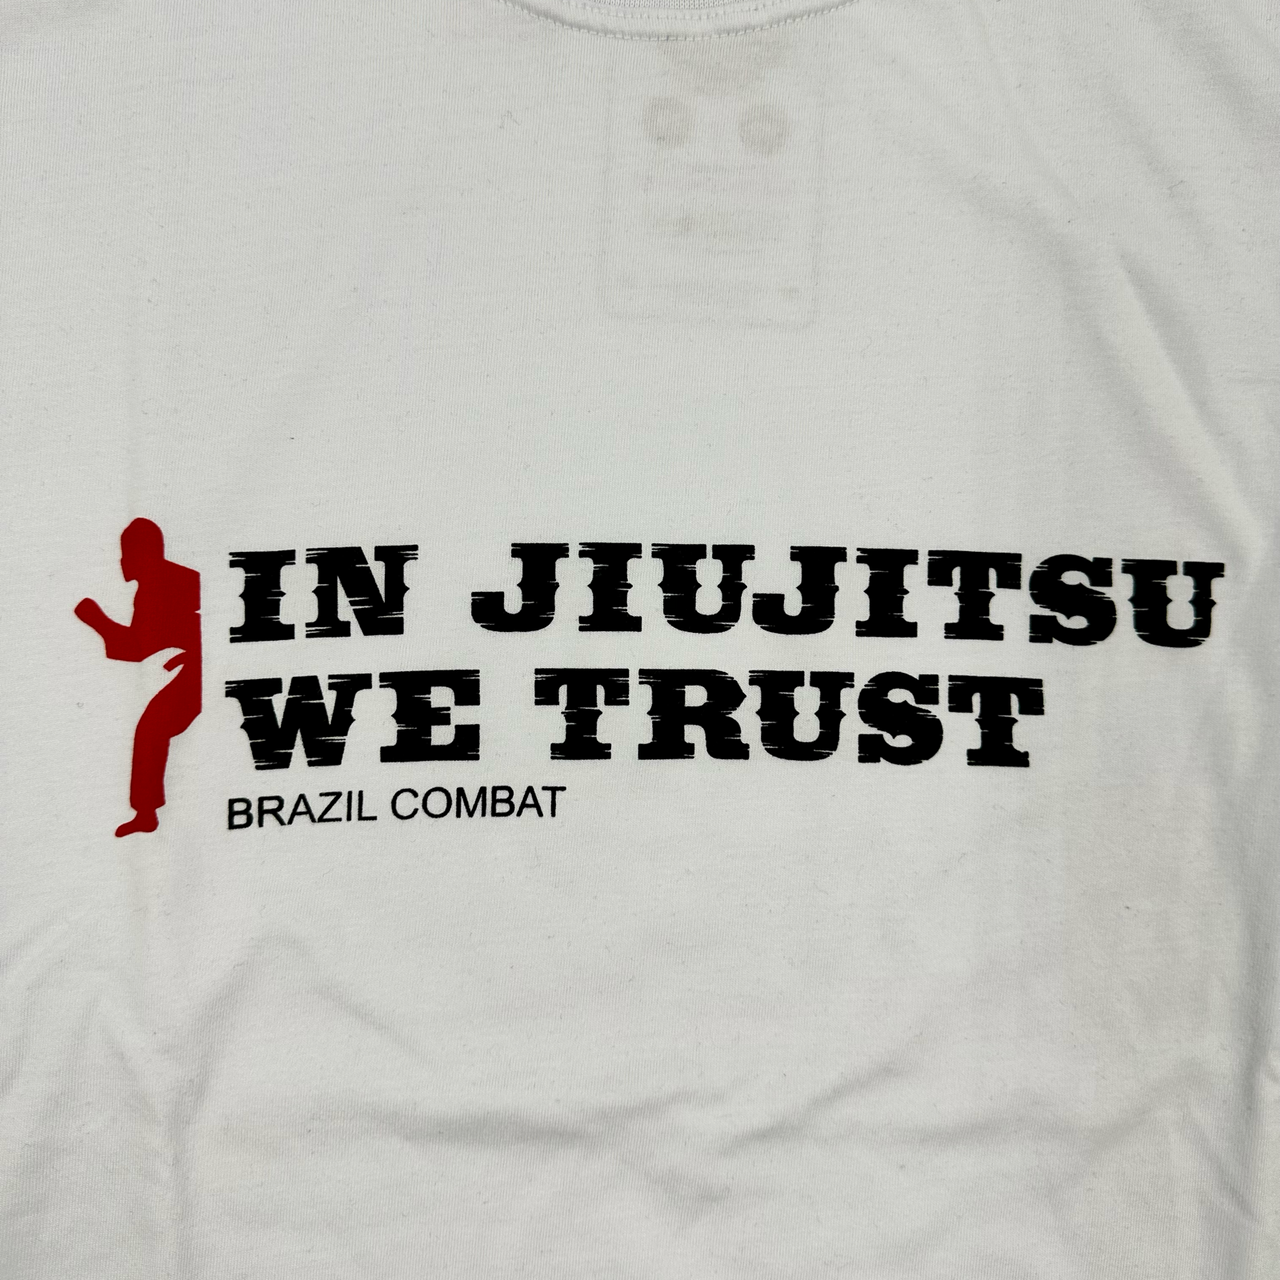 In Jiu Jitsu We Trust T-Shirt